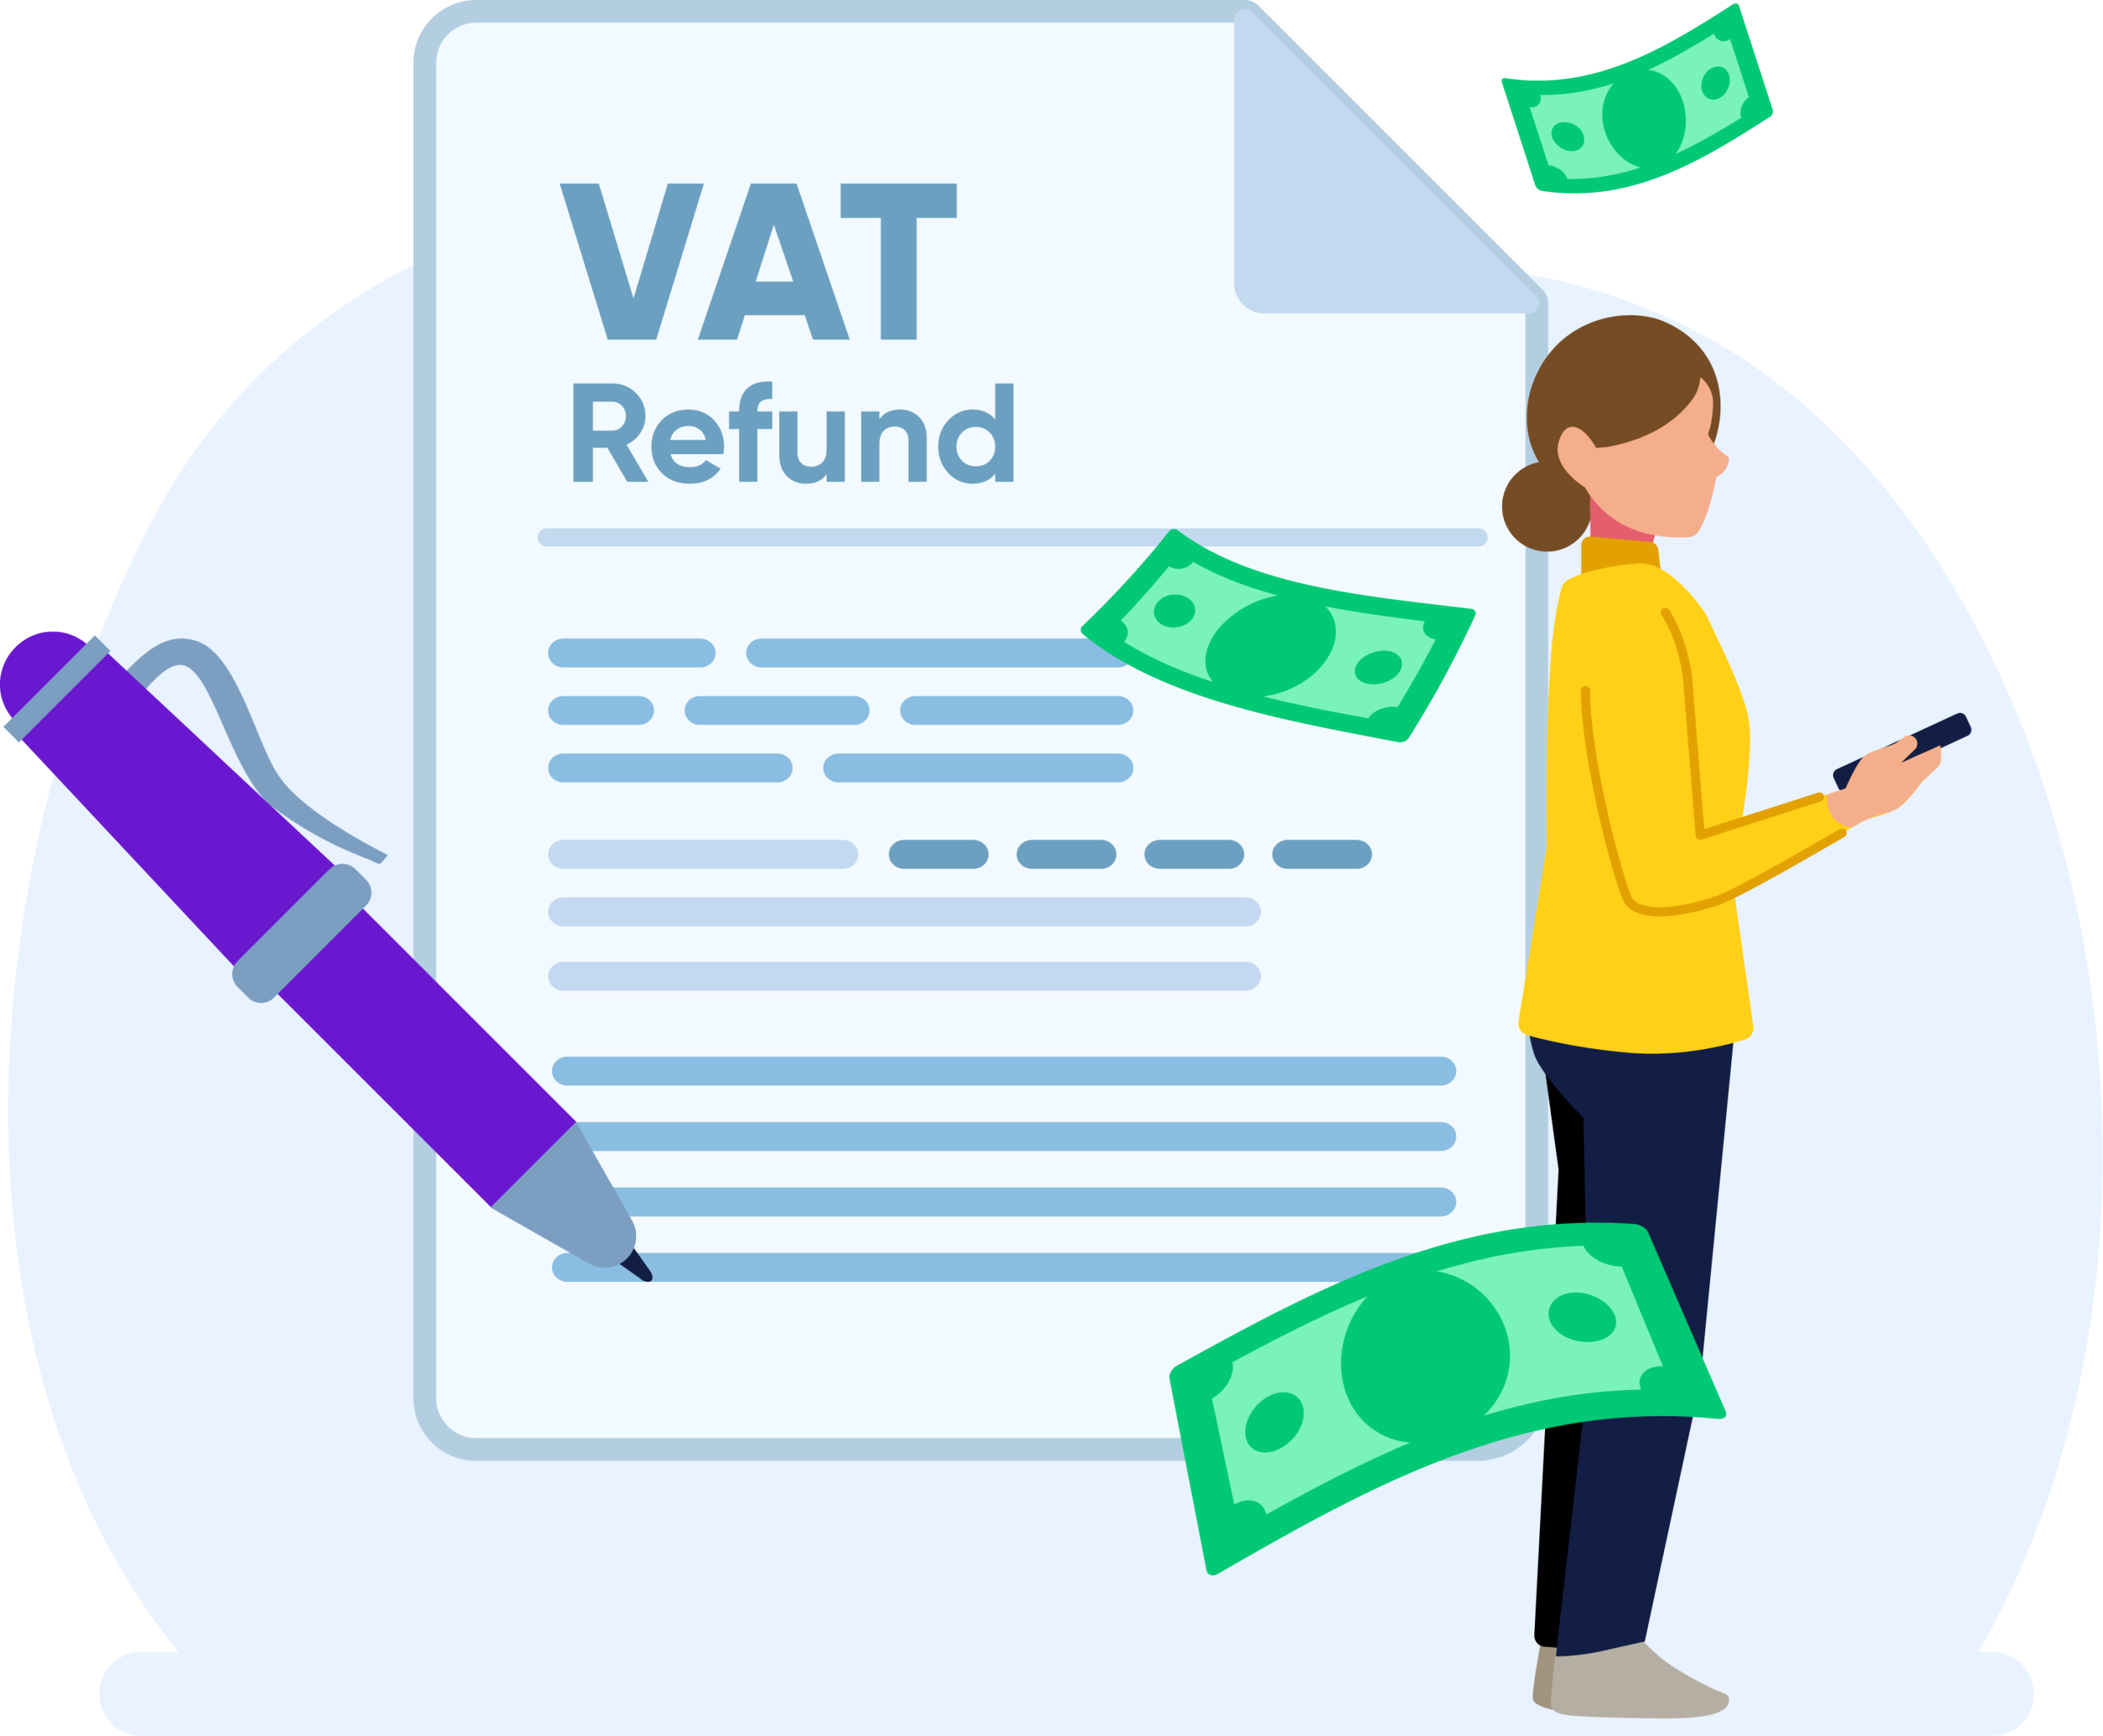 EU VAT Refunds form